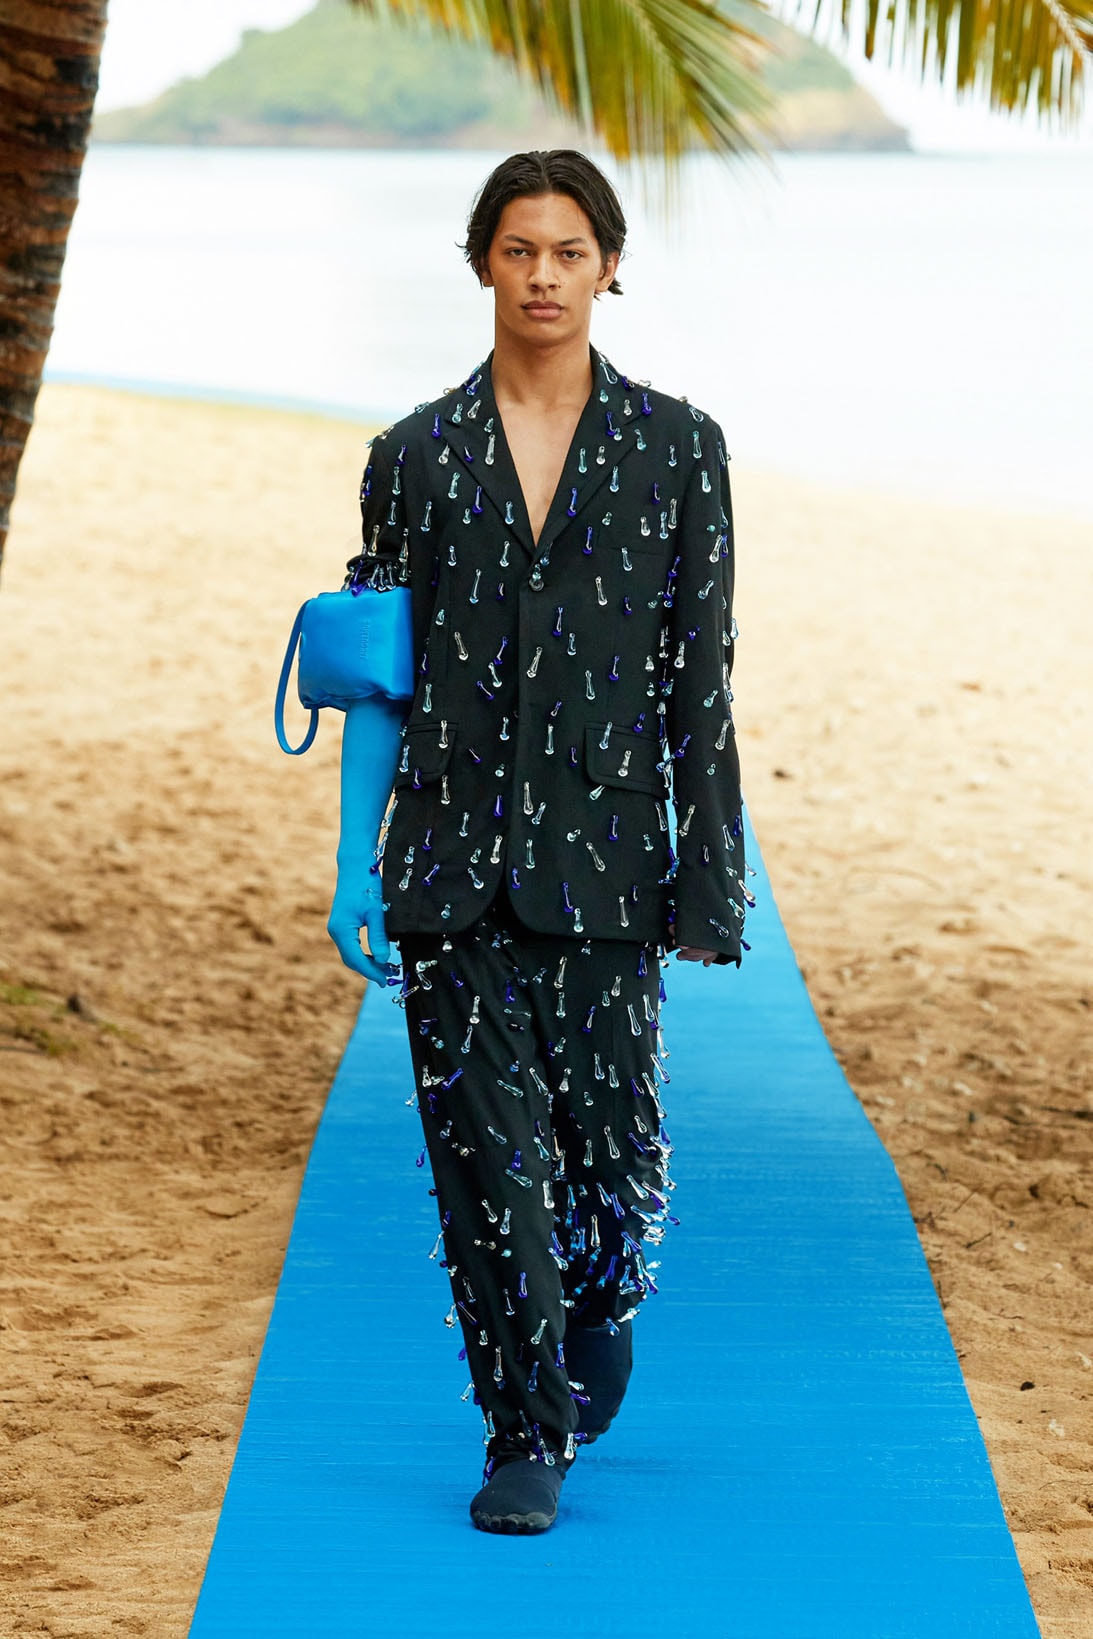 NEW Louis Vuitton Paris Hot Summer 2023 Hawaiian Shirt & Beach